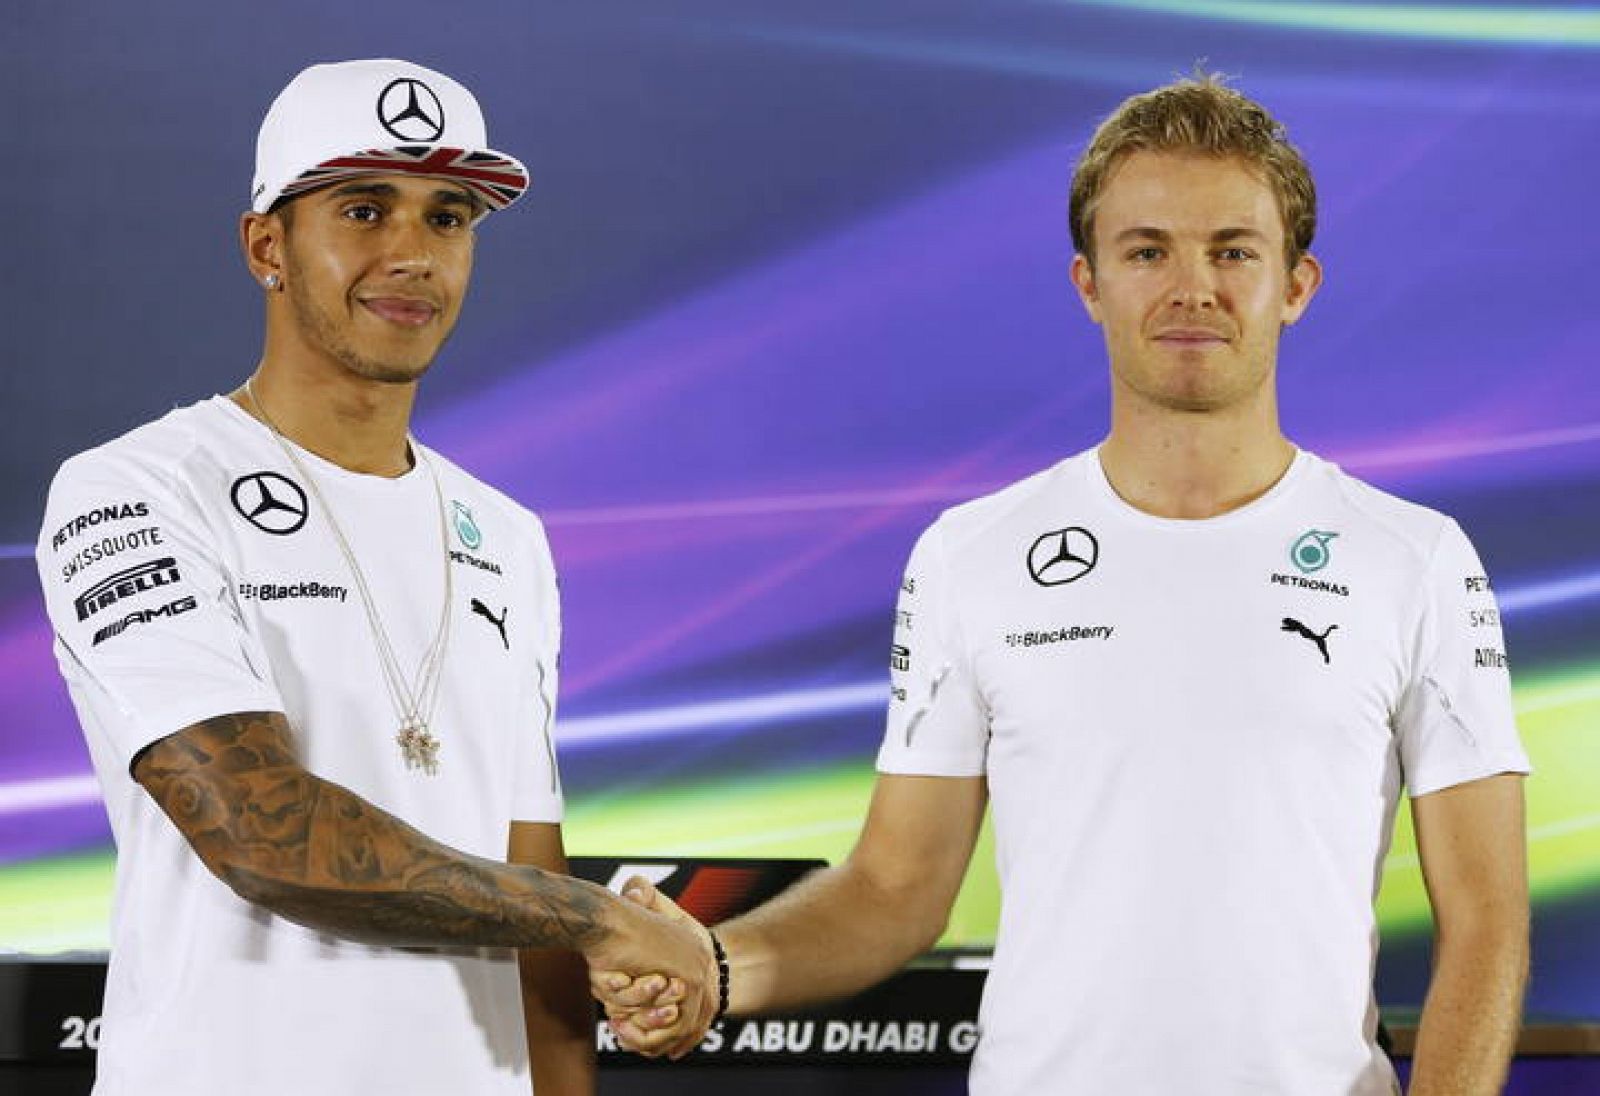 El piloto alemán de Mercedes Nico Rosberg (dcha) estrecha la mano a su compañero de equipo, el británico Lewis Hamilton